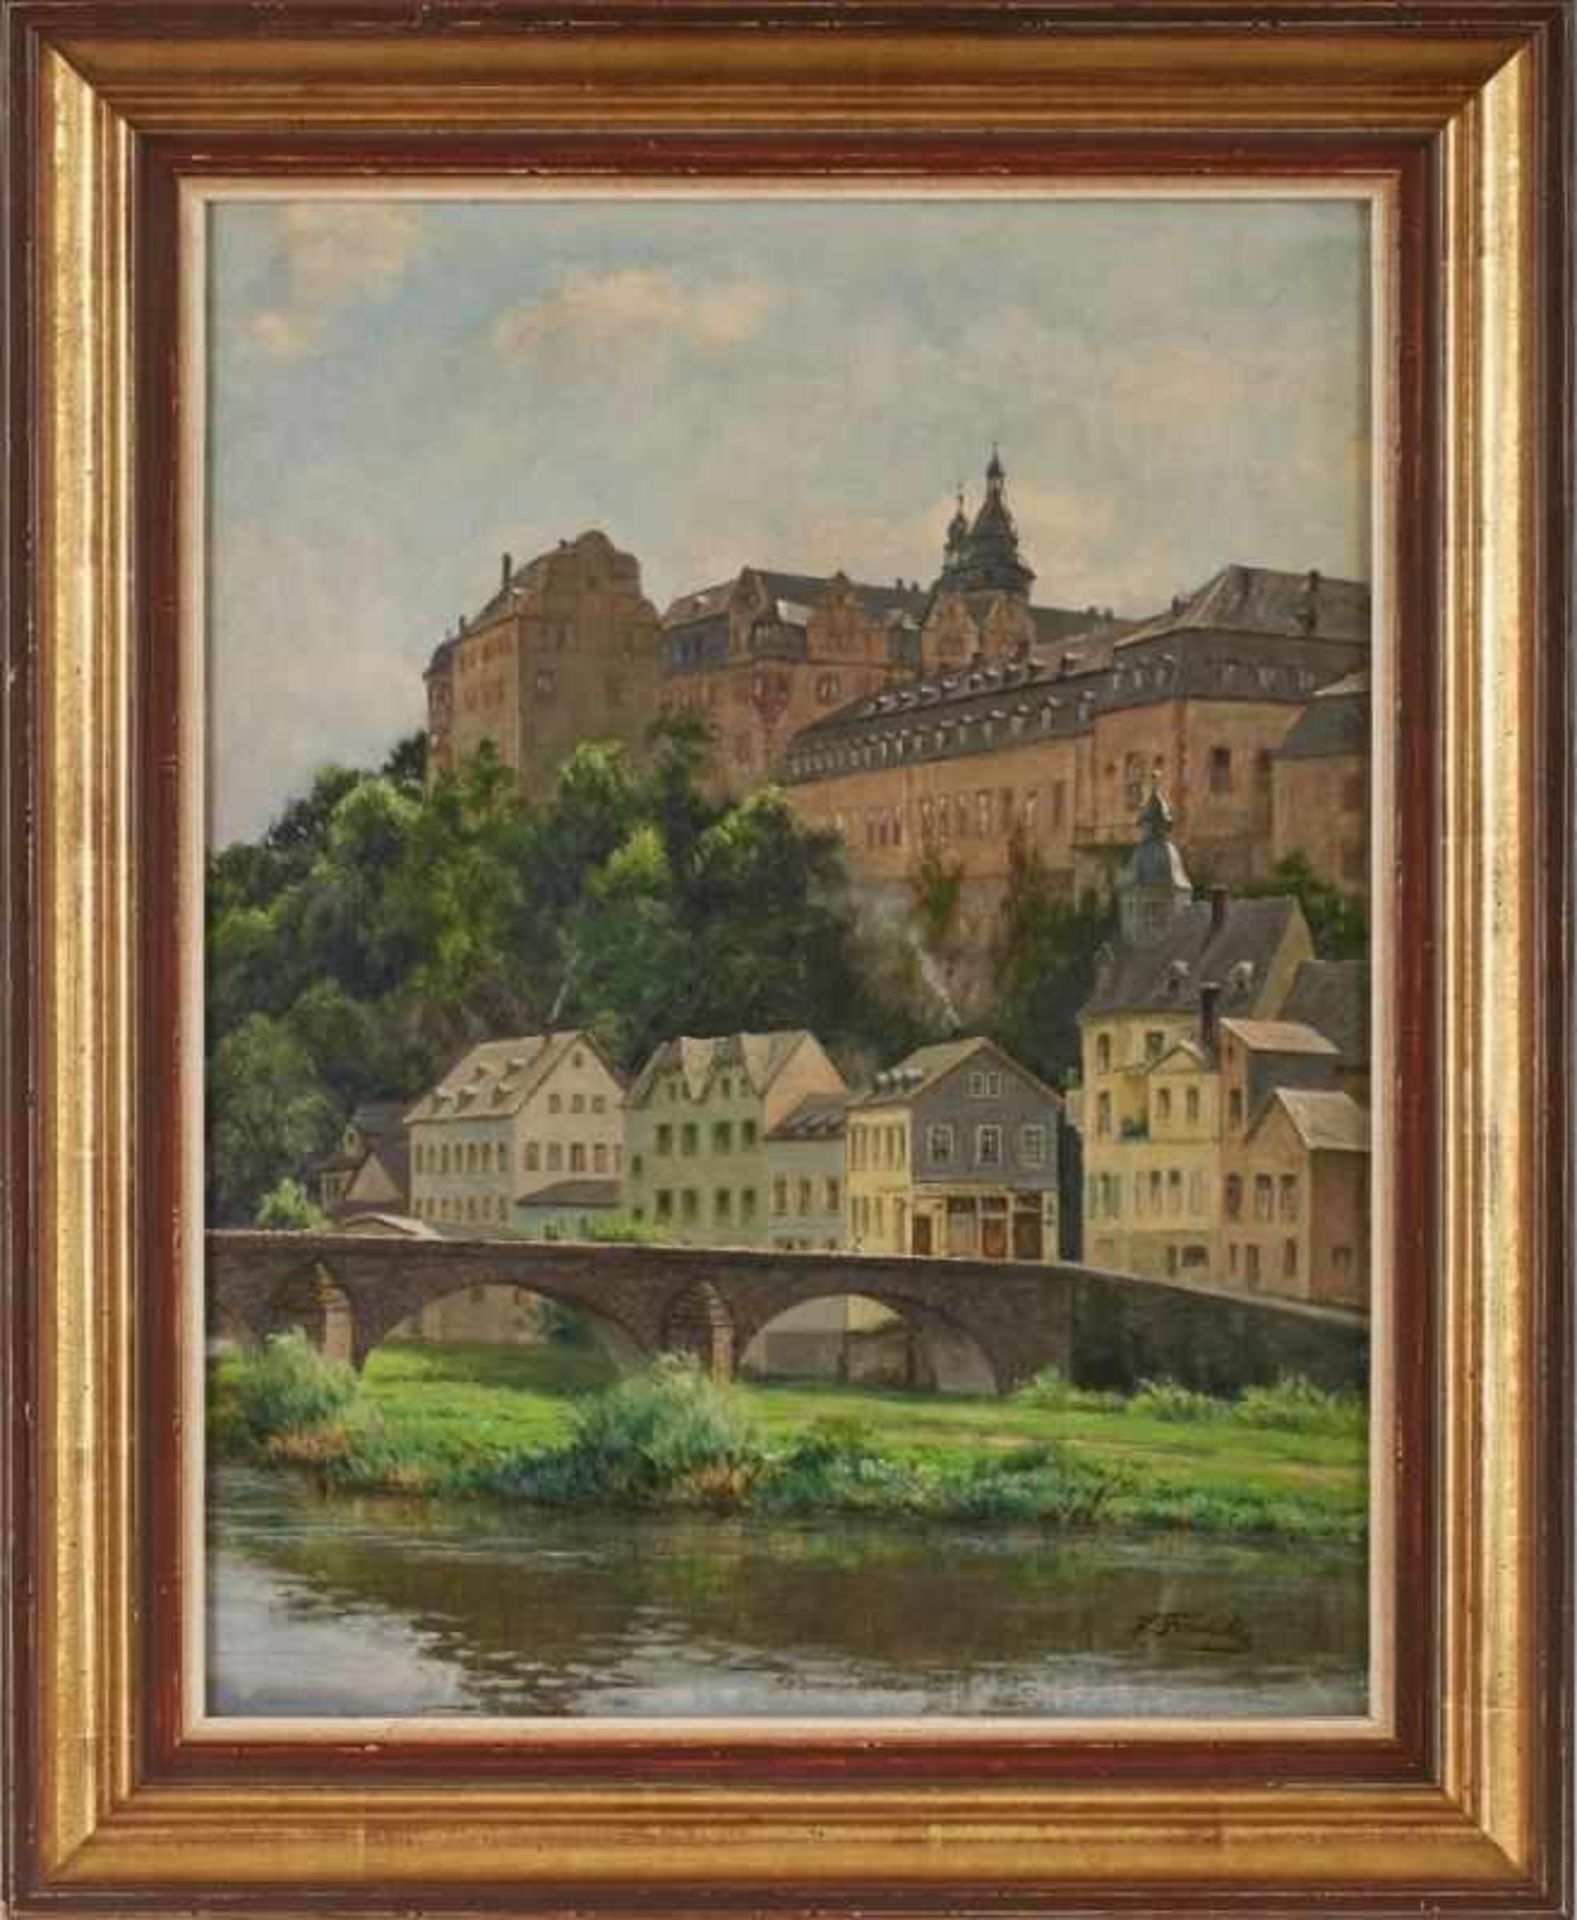 Gemälde Hanny Franke 1890 Koblenz - 1973 Frankfurt "Schloss Weilburg" u. re. sign. H. Franke Öl/ - Image 3 of 3